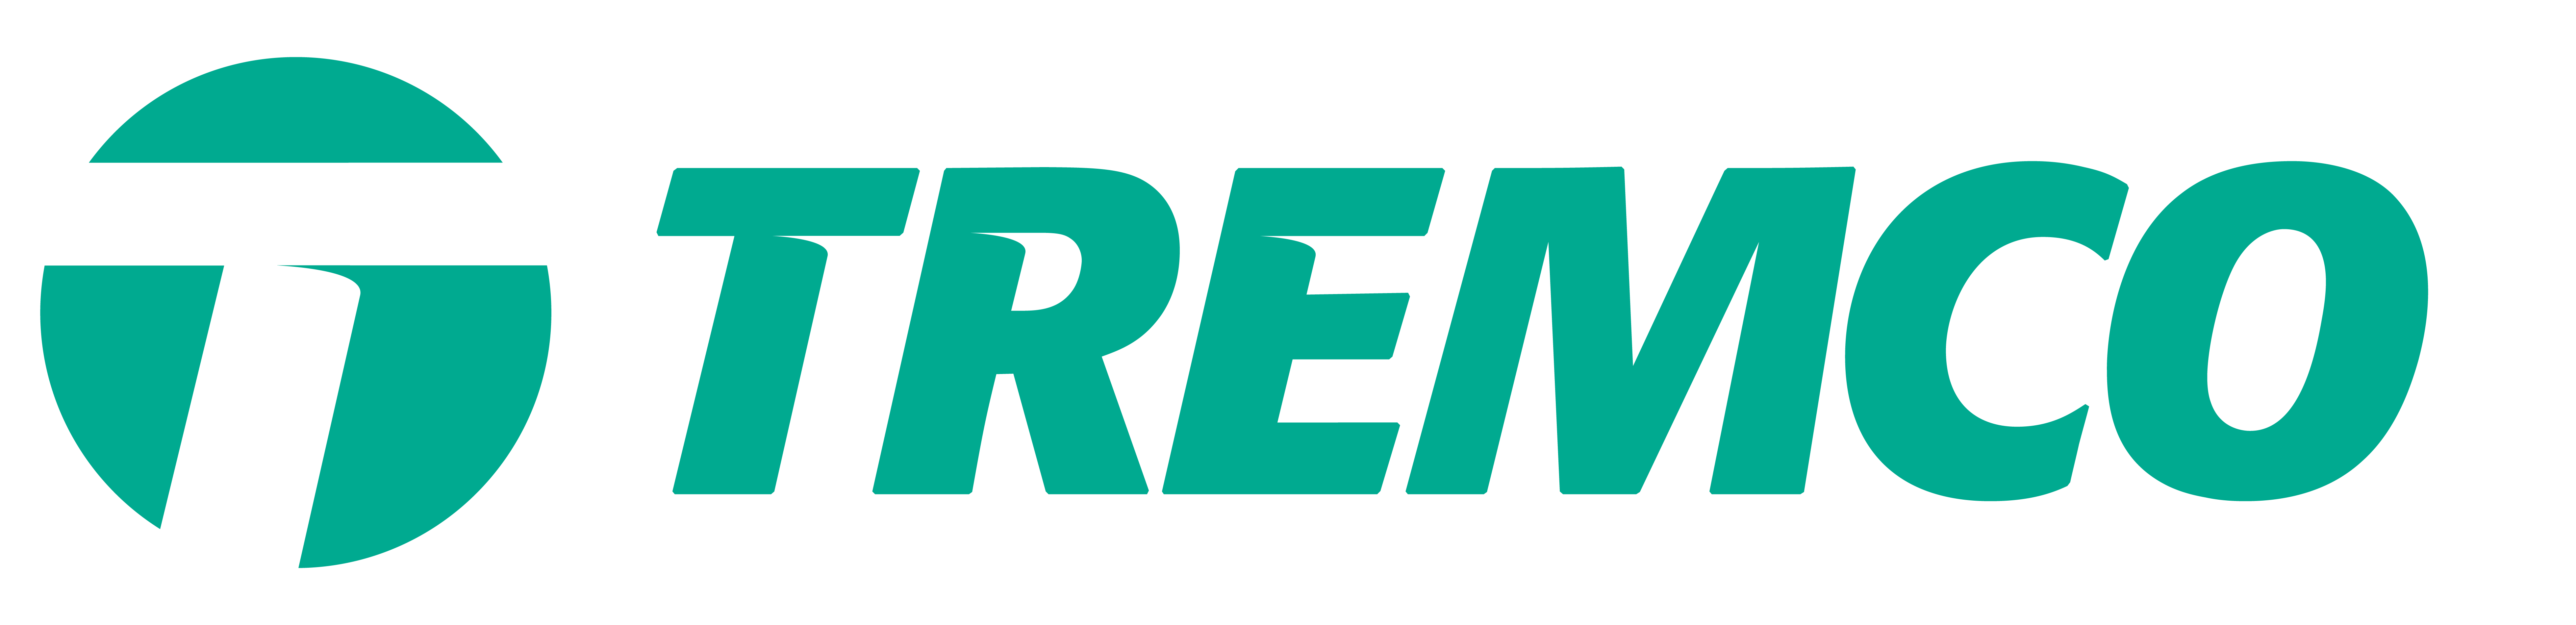 TREMCO_logo-noTM-01